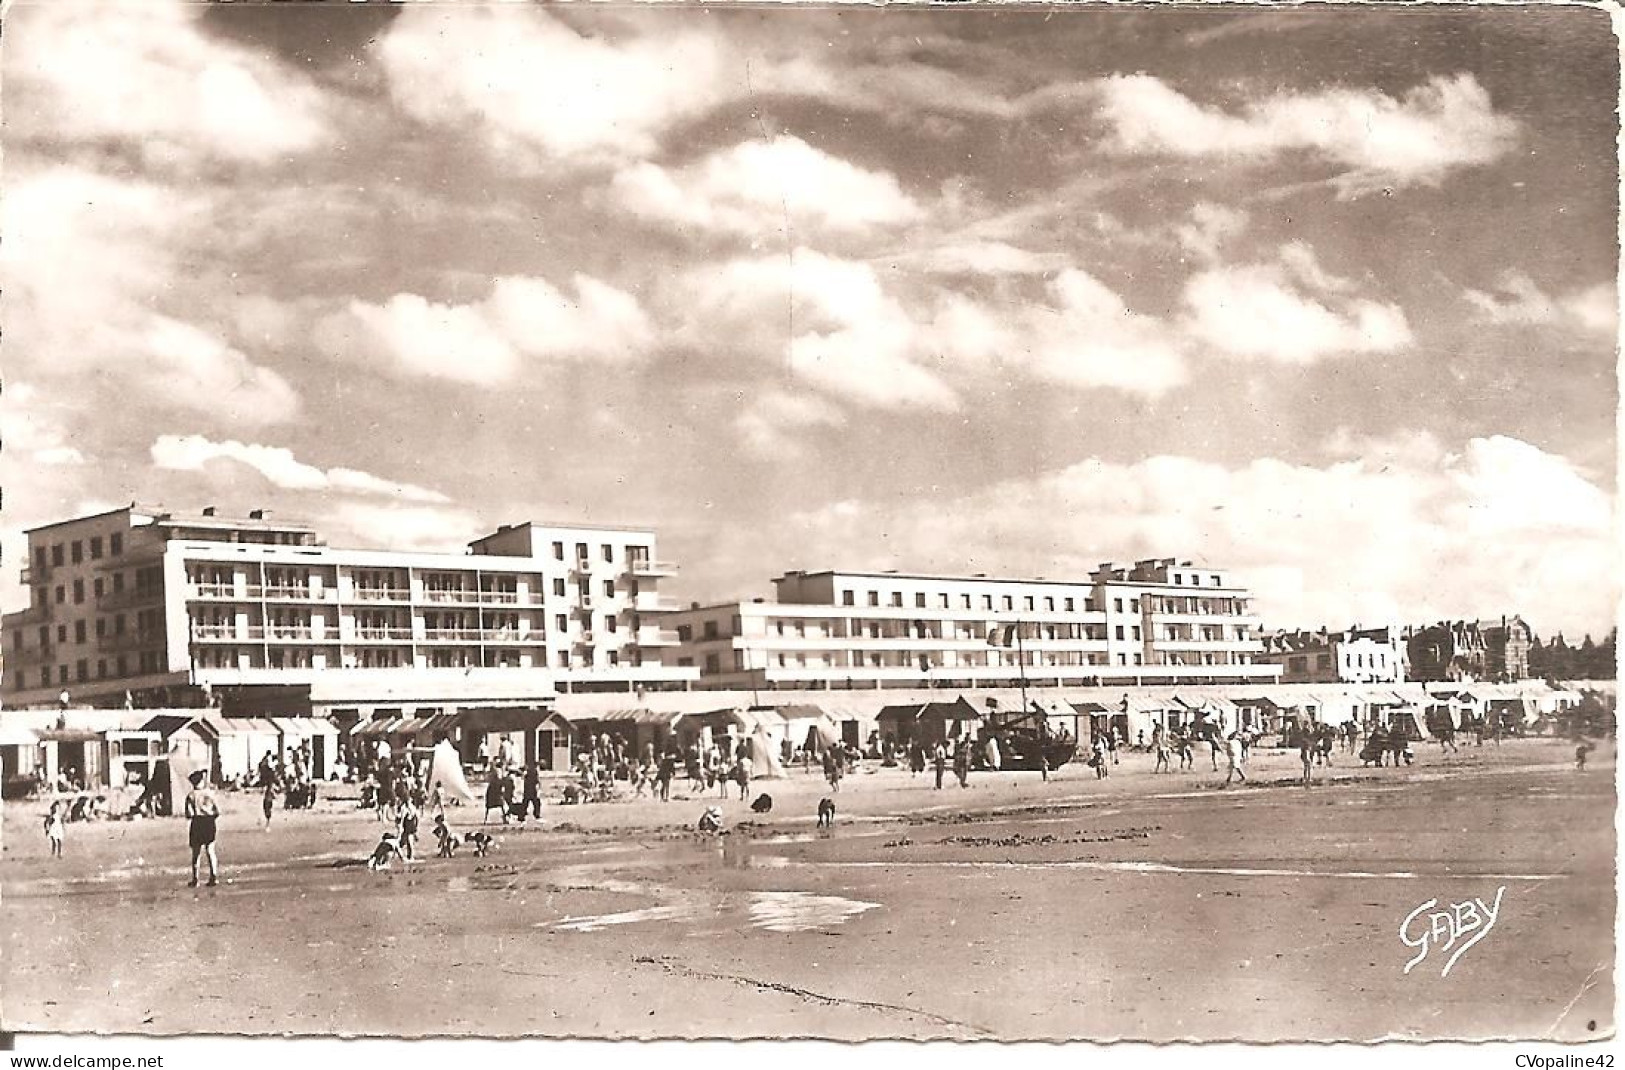 BERCK-PLAGE (62) L'Esplanade Vue De La Plage En 1960  CPSM  PF - Berck